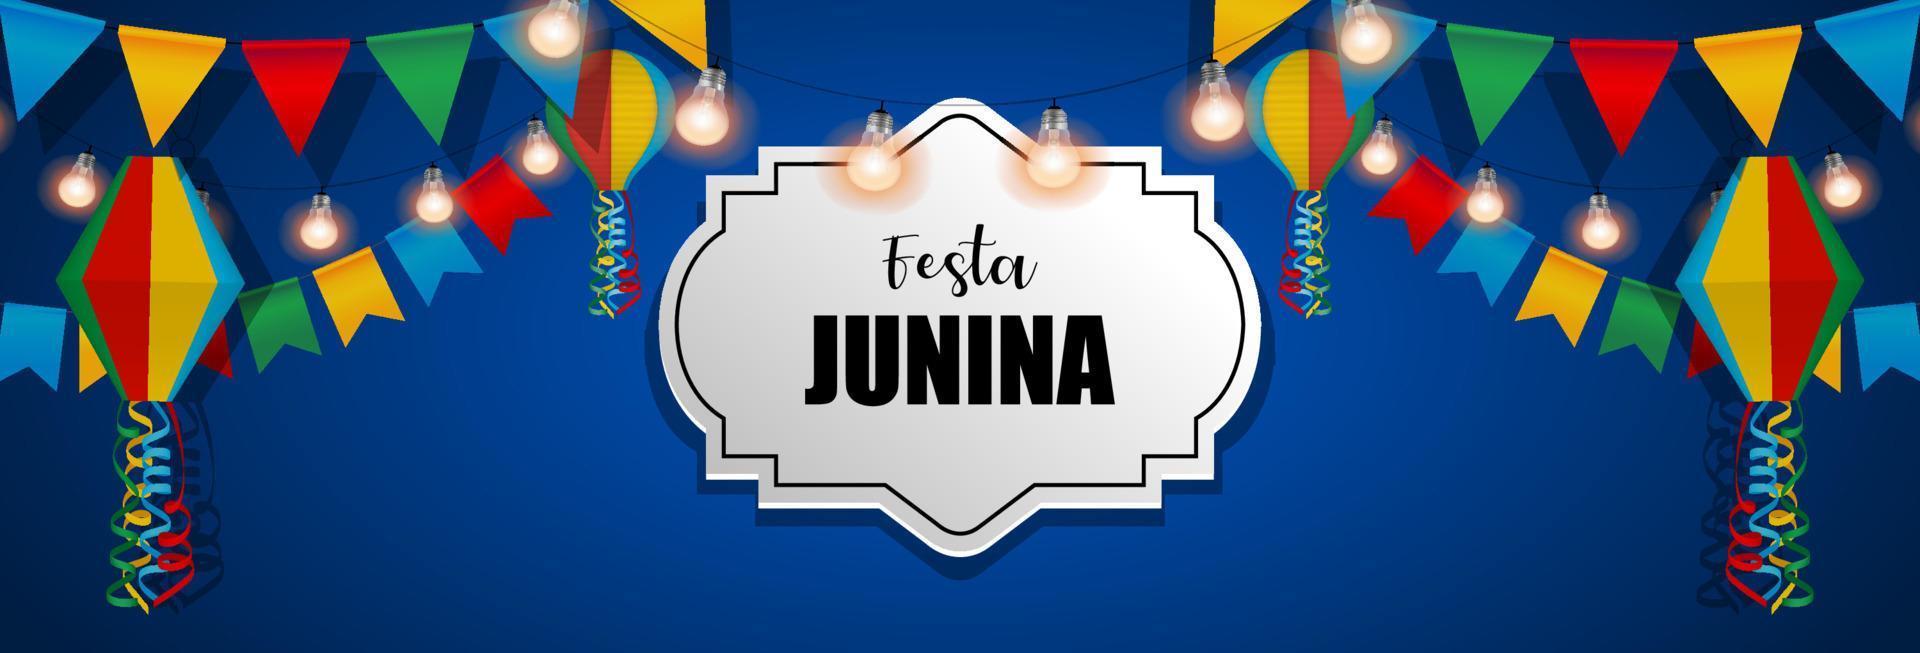 banner festa junina com bandeirolas e lanternas coloridas. junho festival brasileiro benner vetor